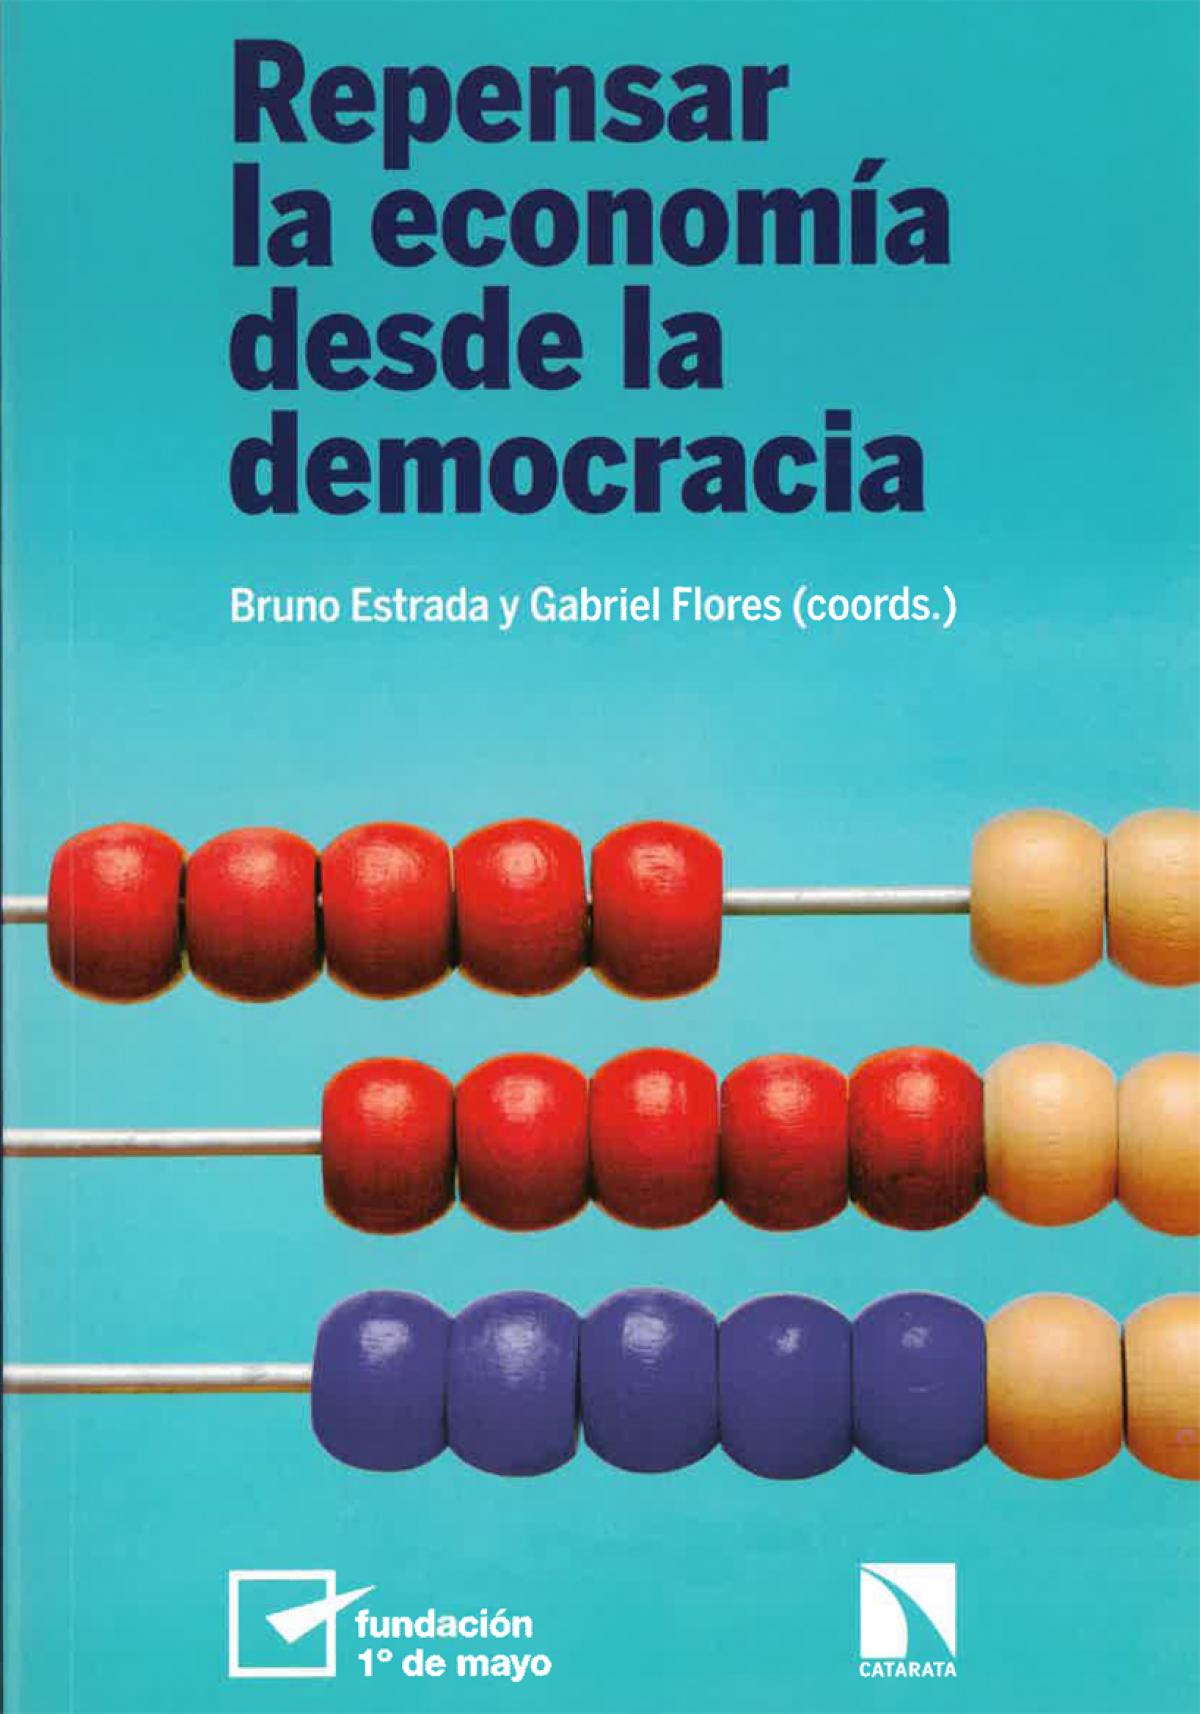 Portada libro "Repensar la economa desde la democracia"